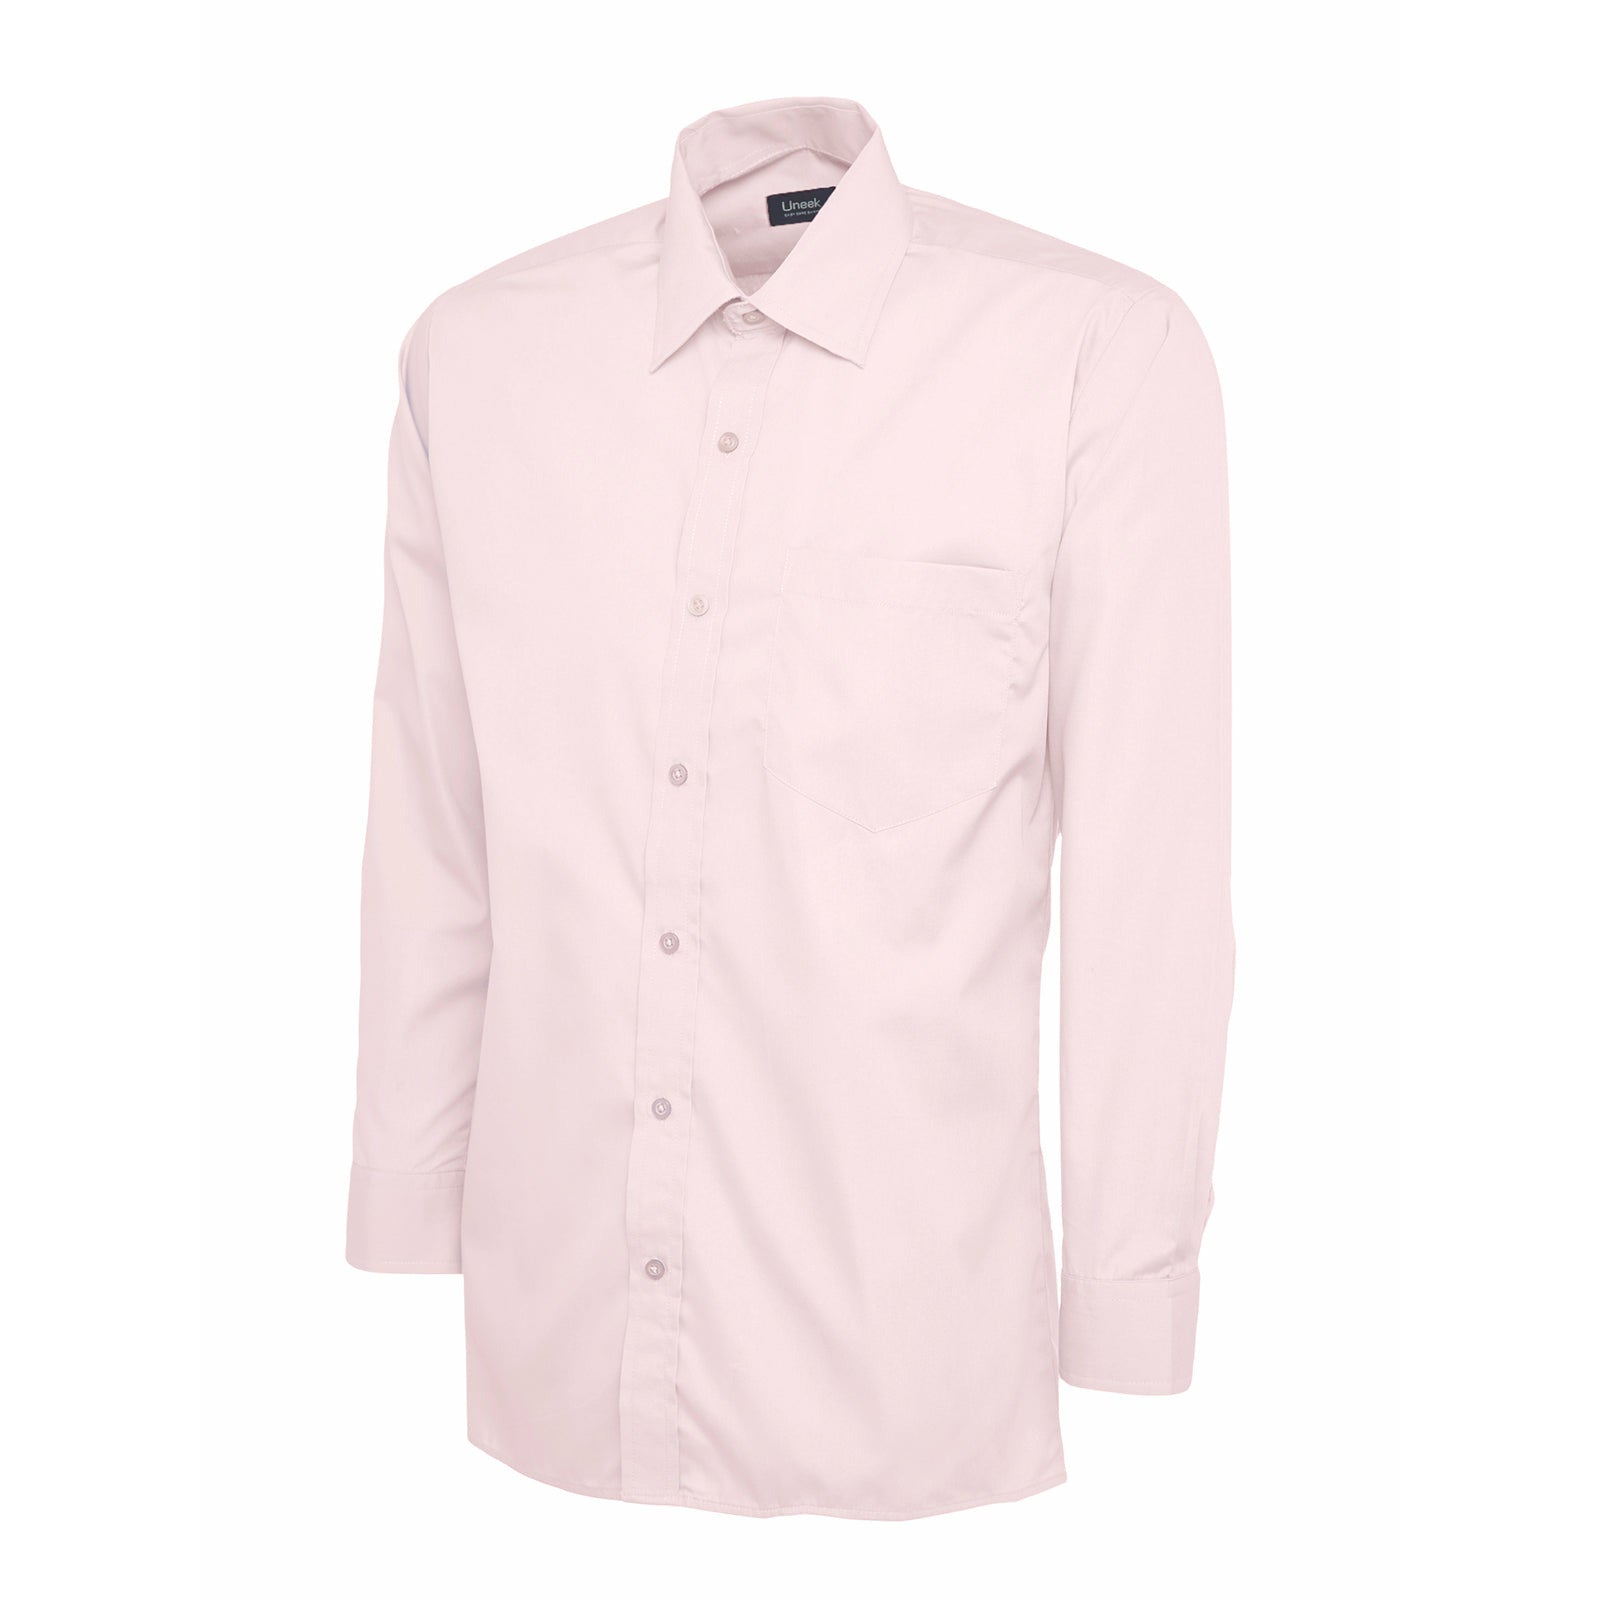 Mens Poplin Full Sleeve Shirt (17 - 19.5) - Hot Pink